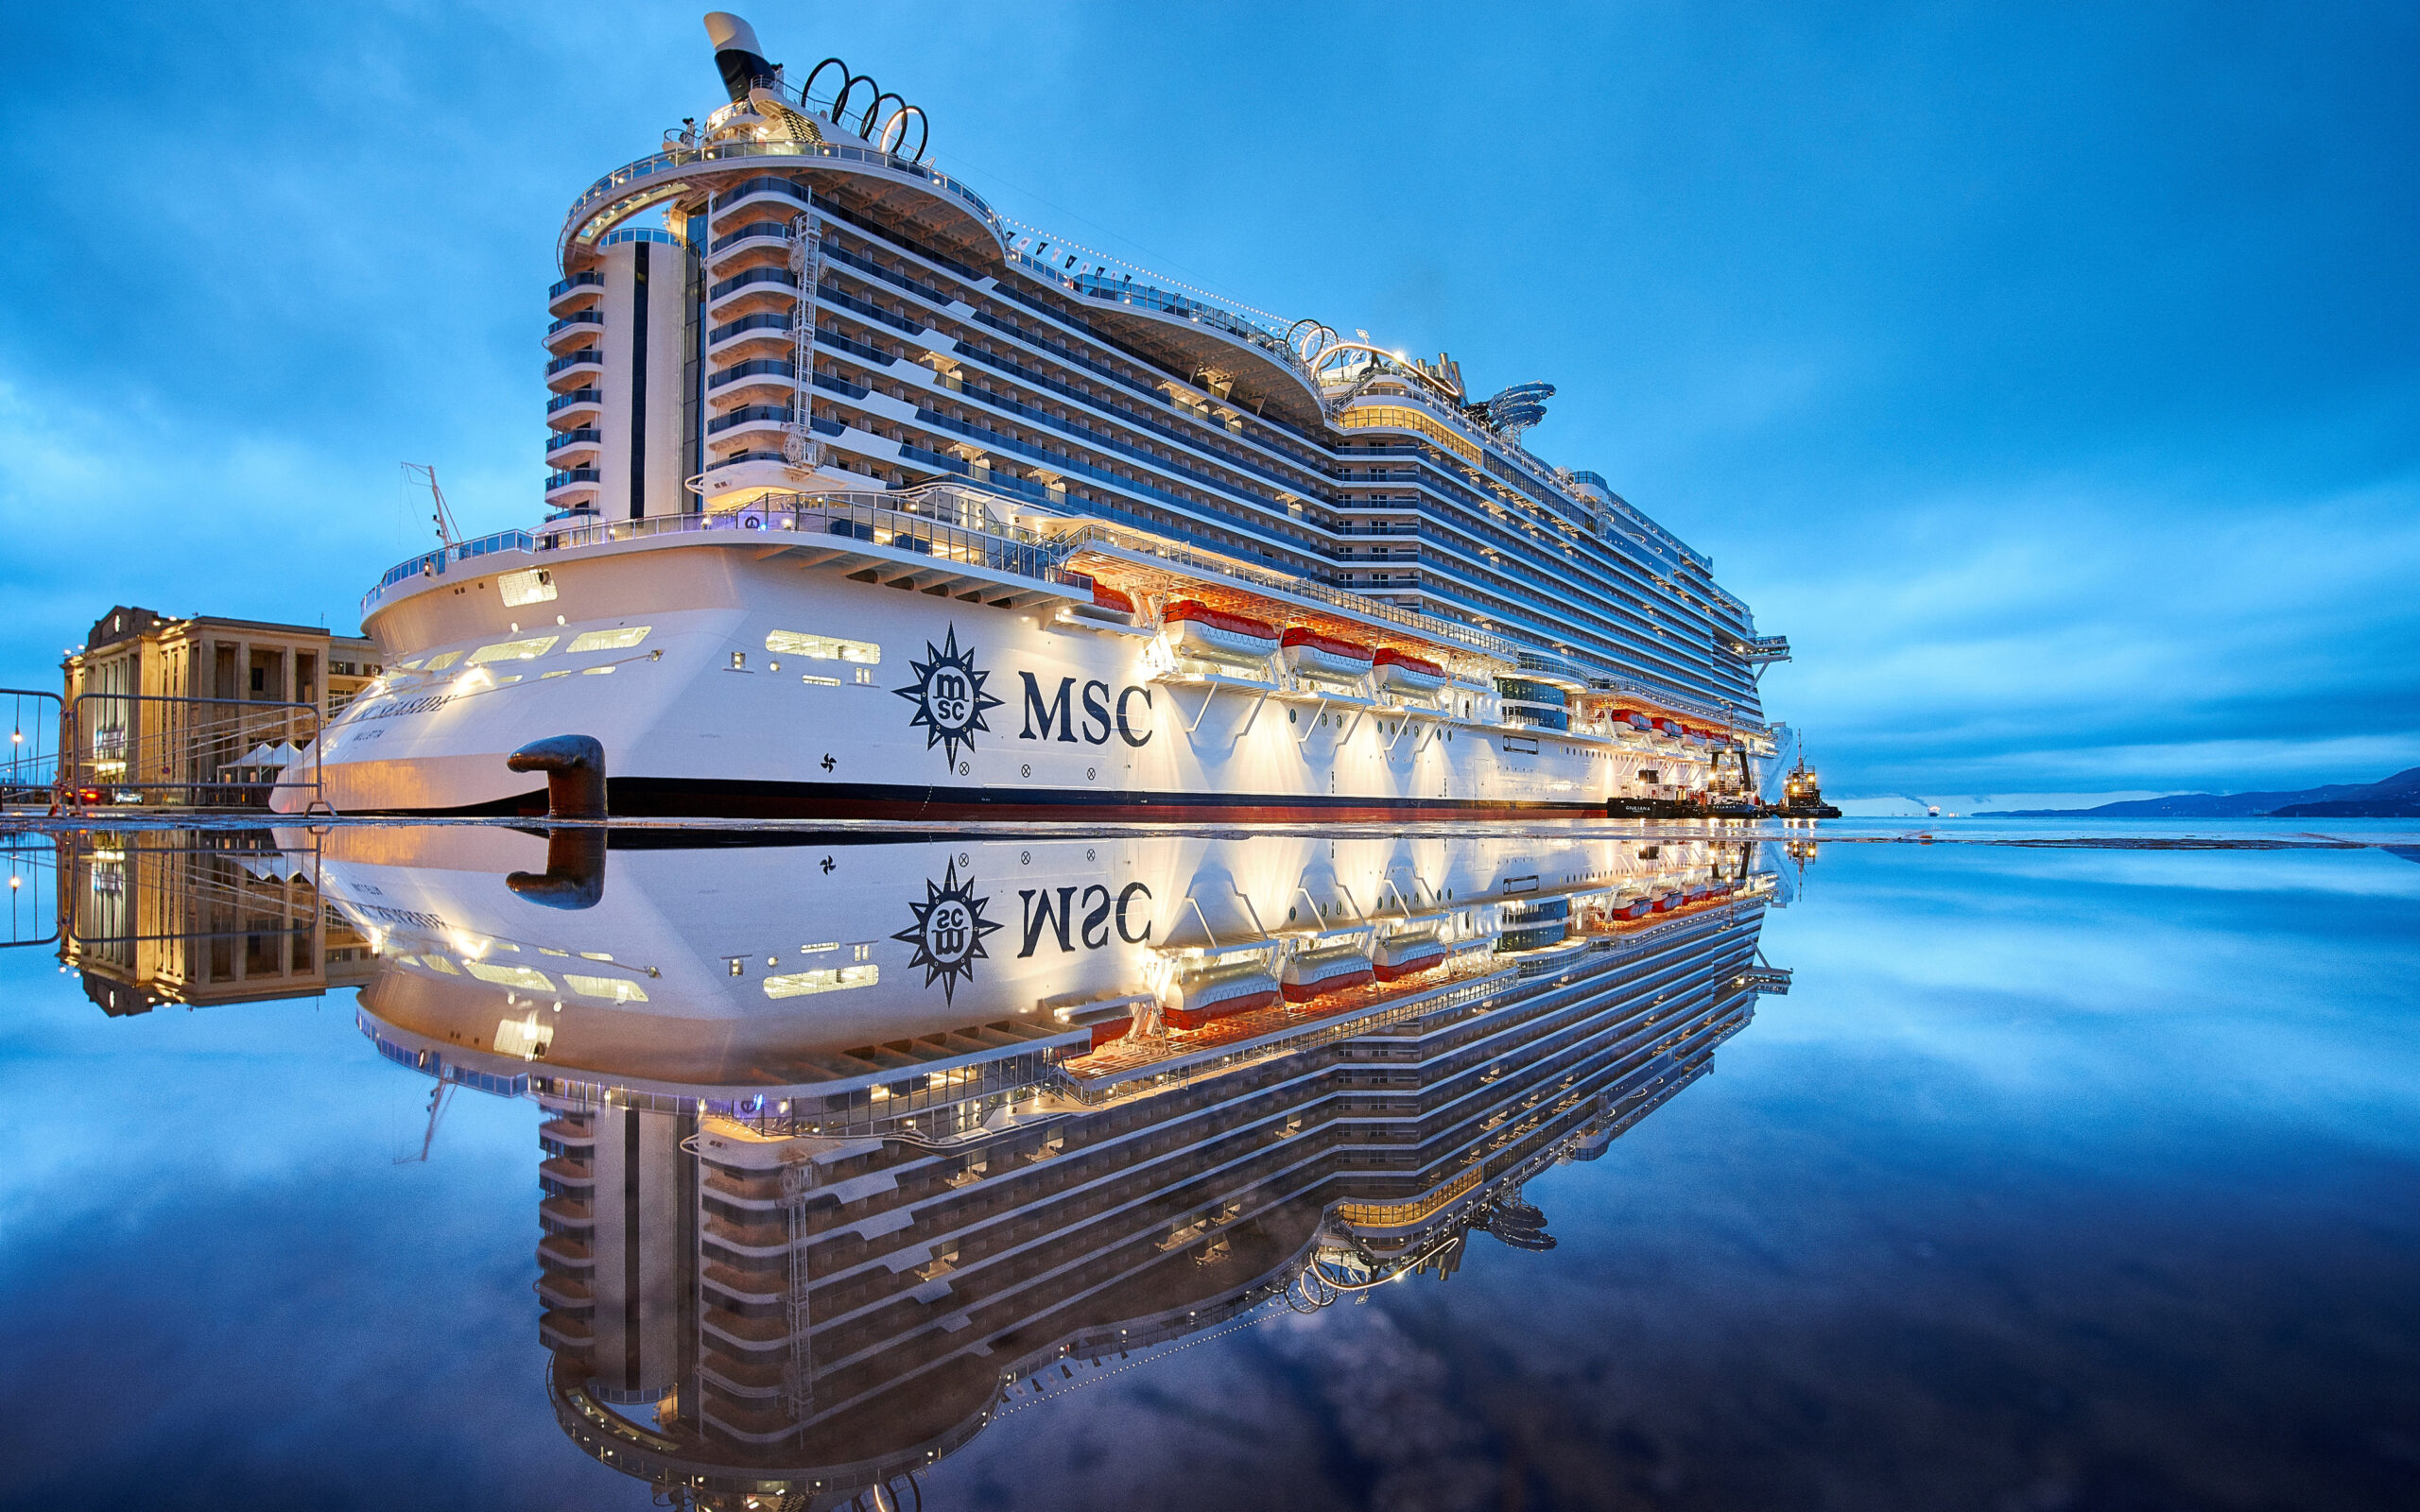 Es hora de descubrir el mundo: MSC Cruceros abre las ventas para su crucero de vuelta al mundo de 2024 con un nuevo itinerario